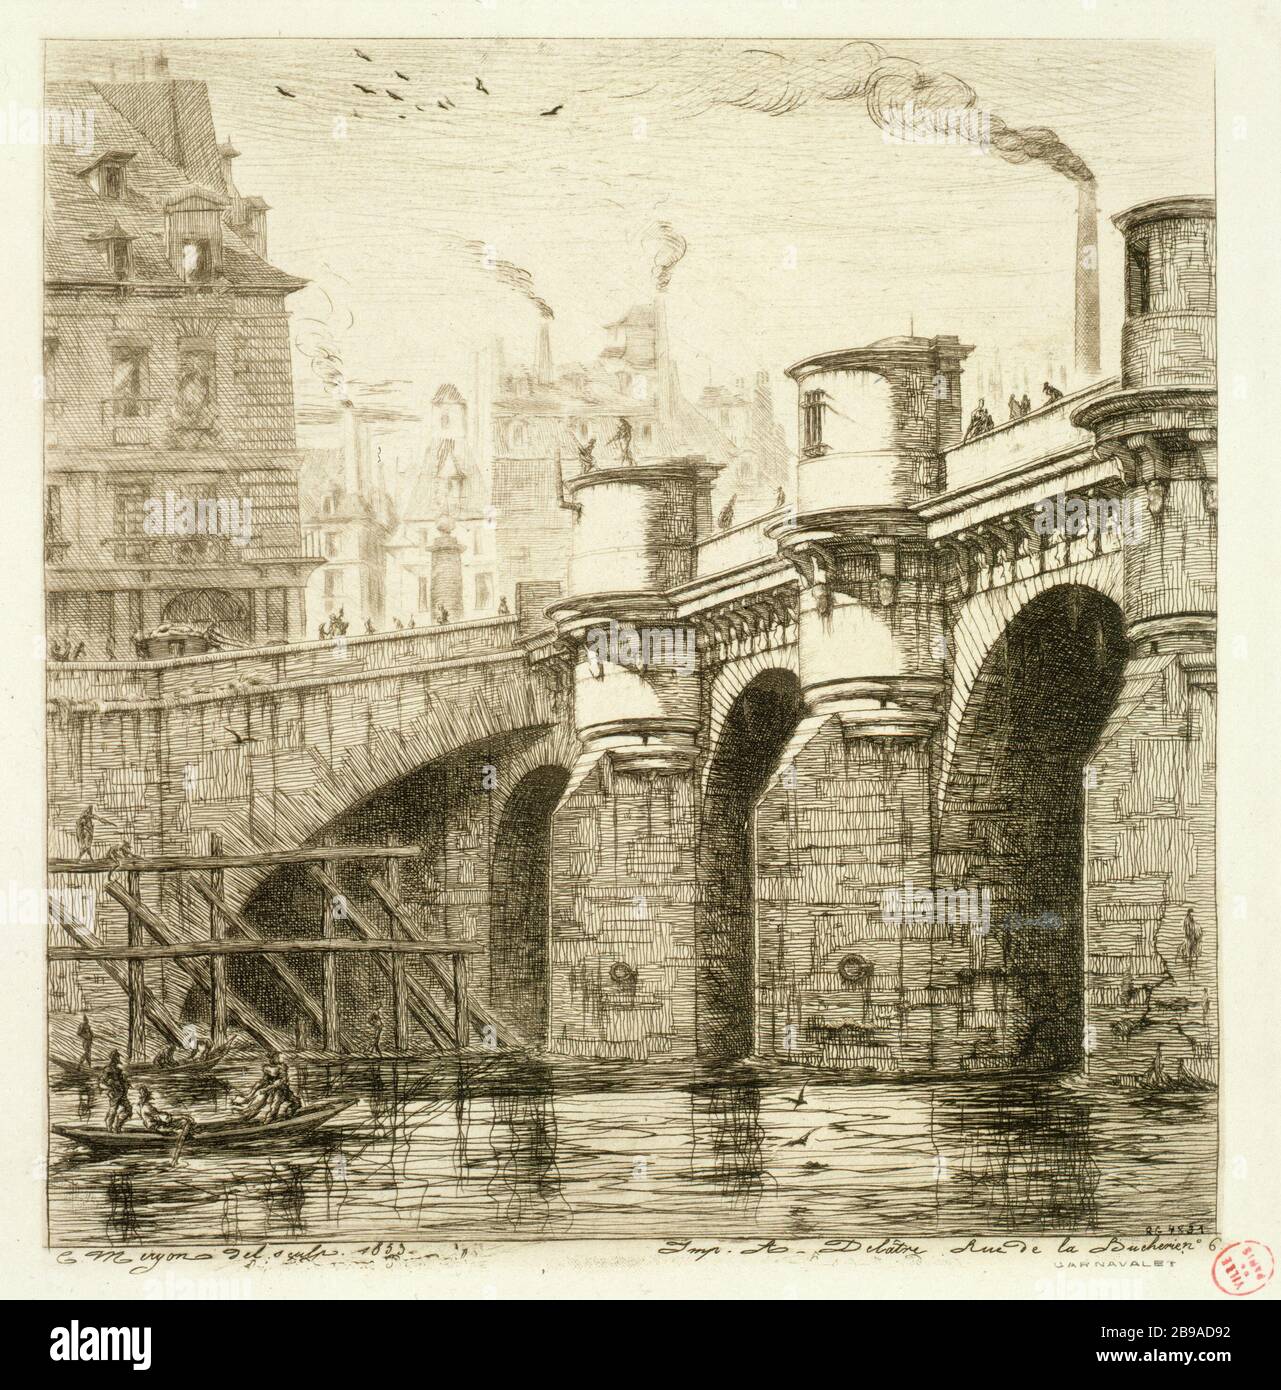 PONT NEUF EN 1853 Charles Méryon (1821-1868). 'Le Pont-neuf en 1853'. Eau-forte. Paris, musée Carnavalet. Banque D'Images